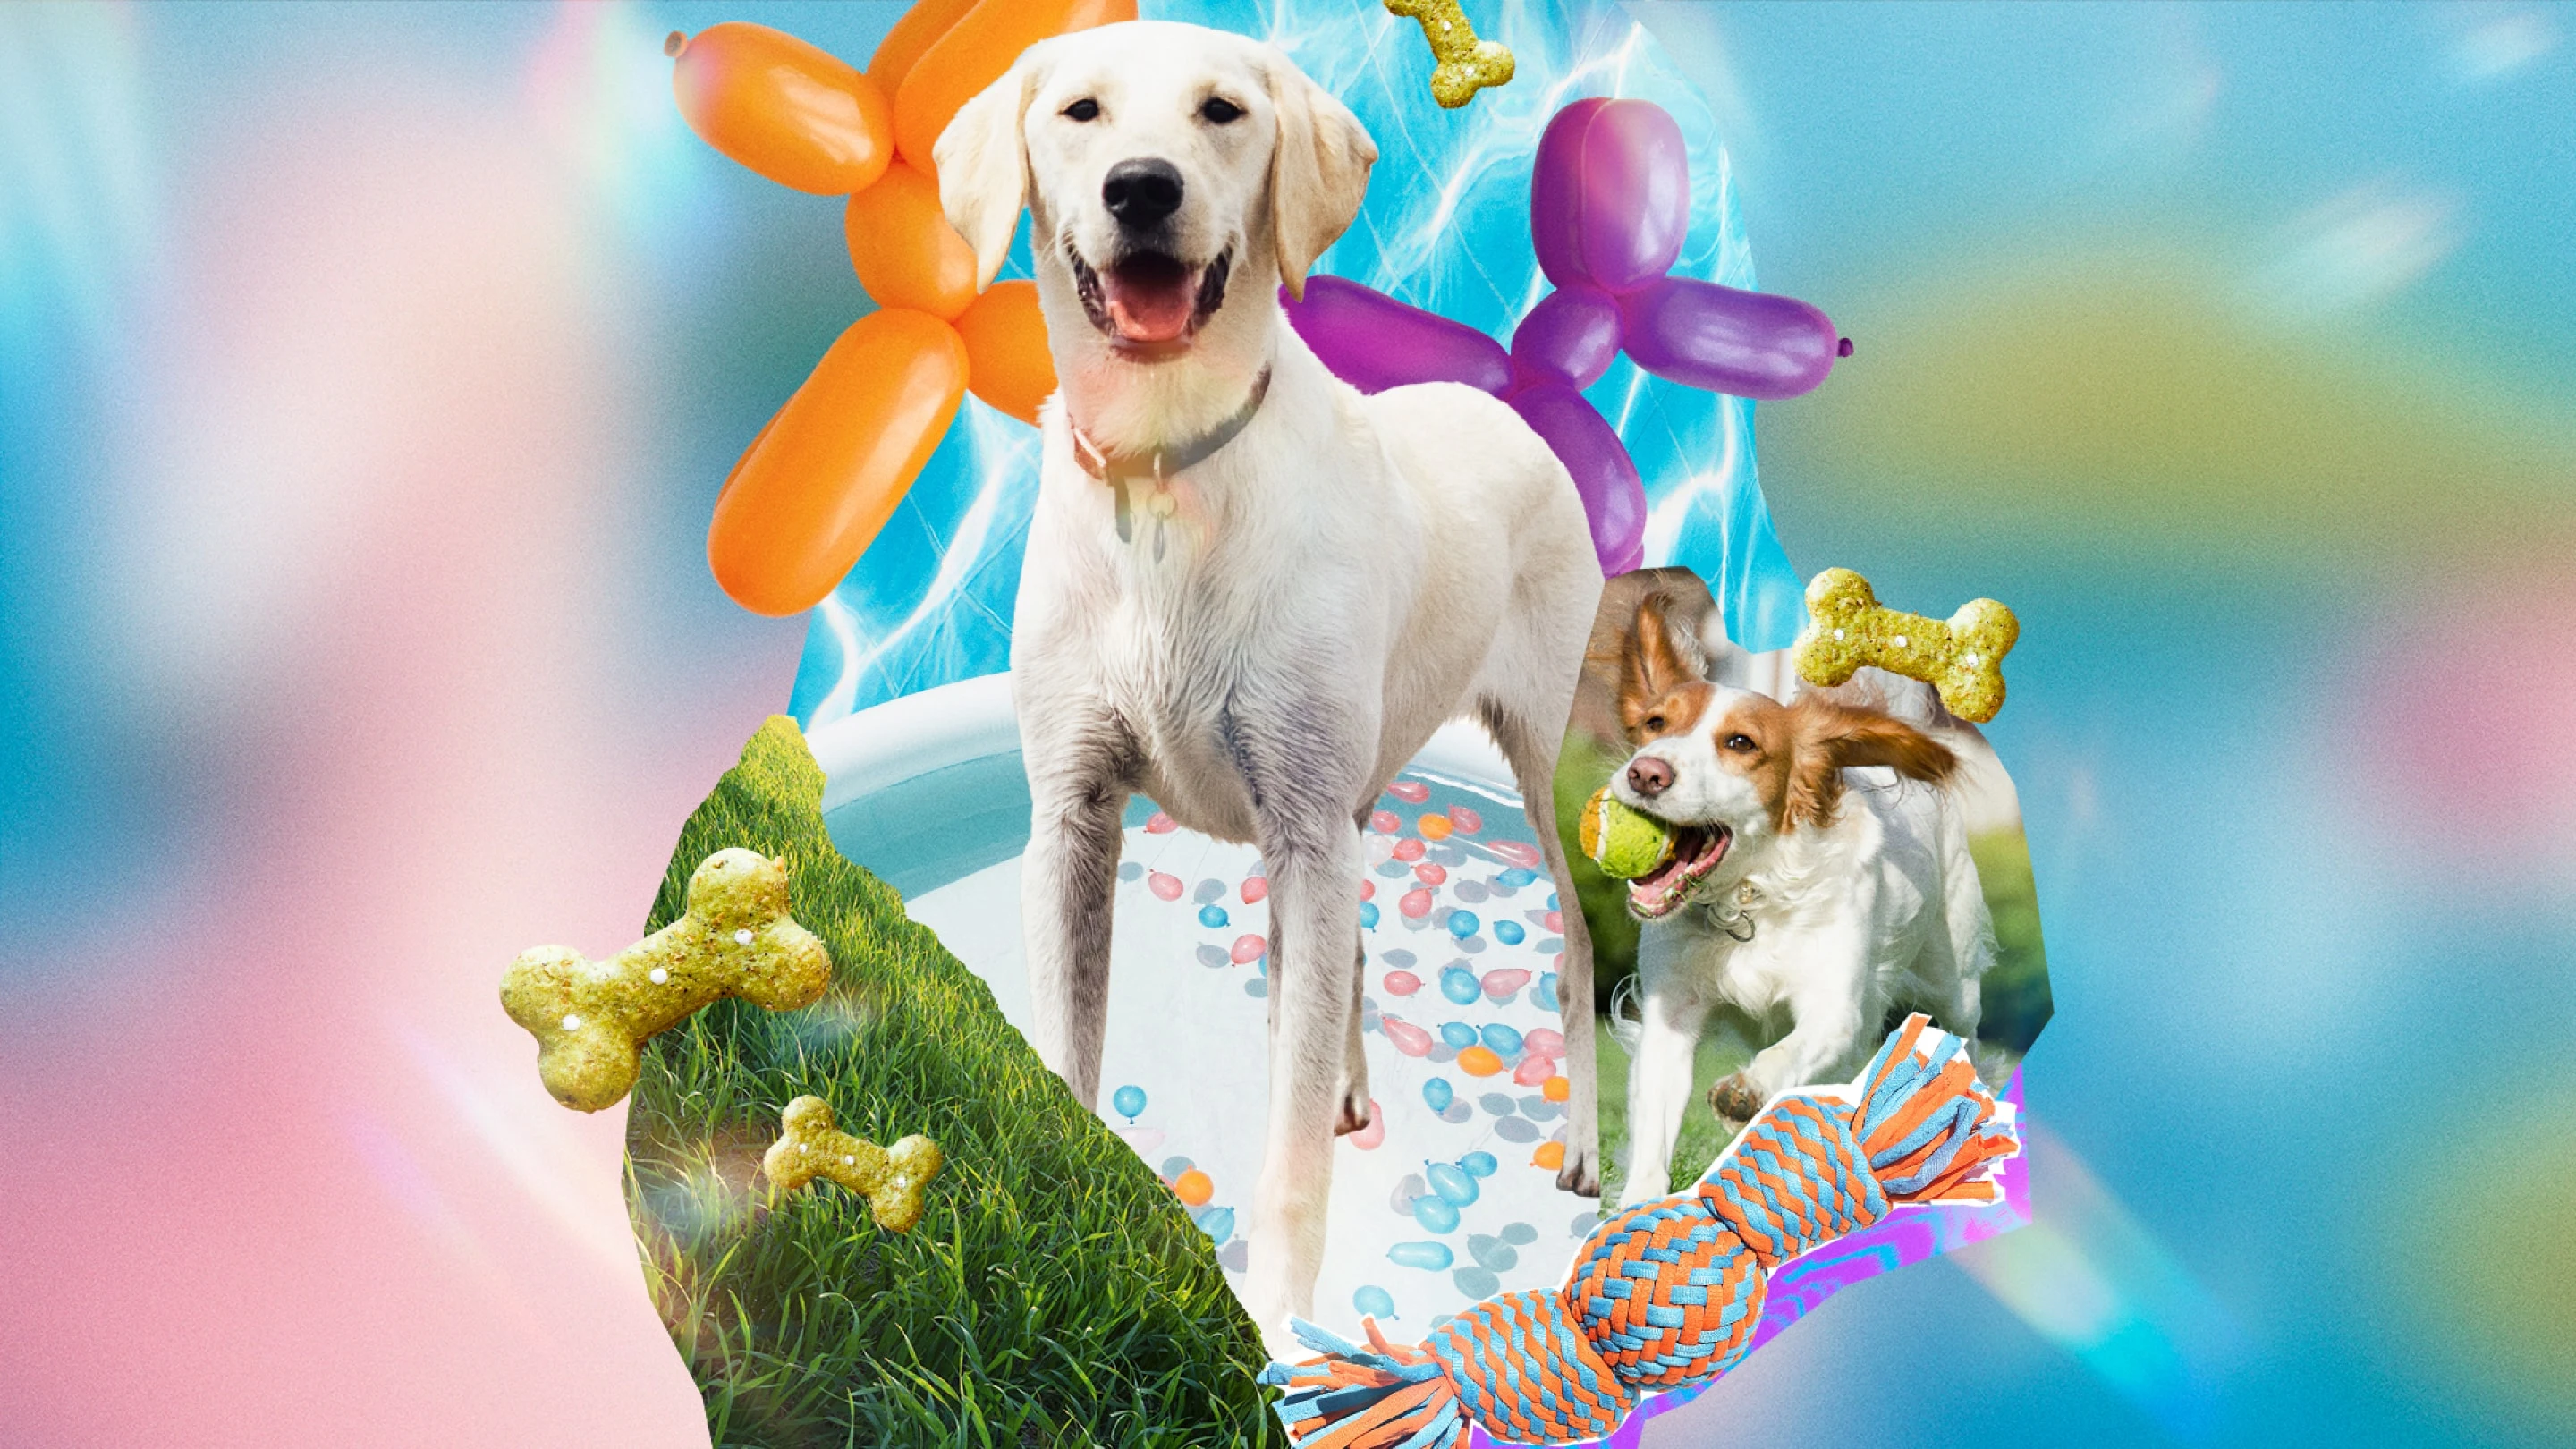 Un collage enfocado en los caninos con cachorros amantes de la piscina, golosinas para perros, globos en forma de perros y juguetes para perros.